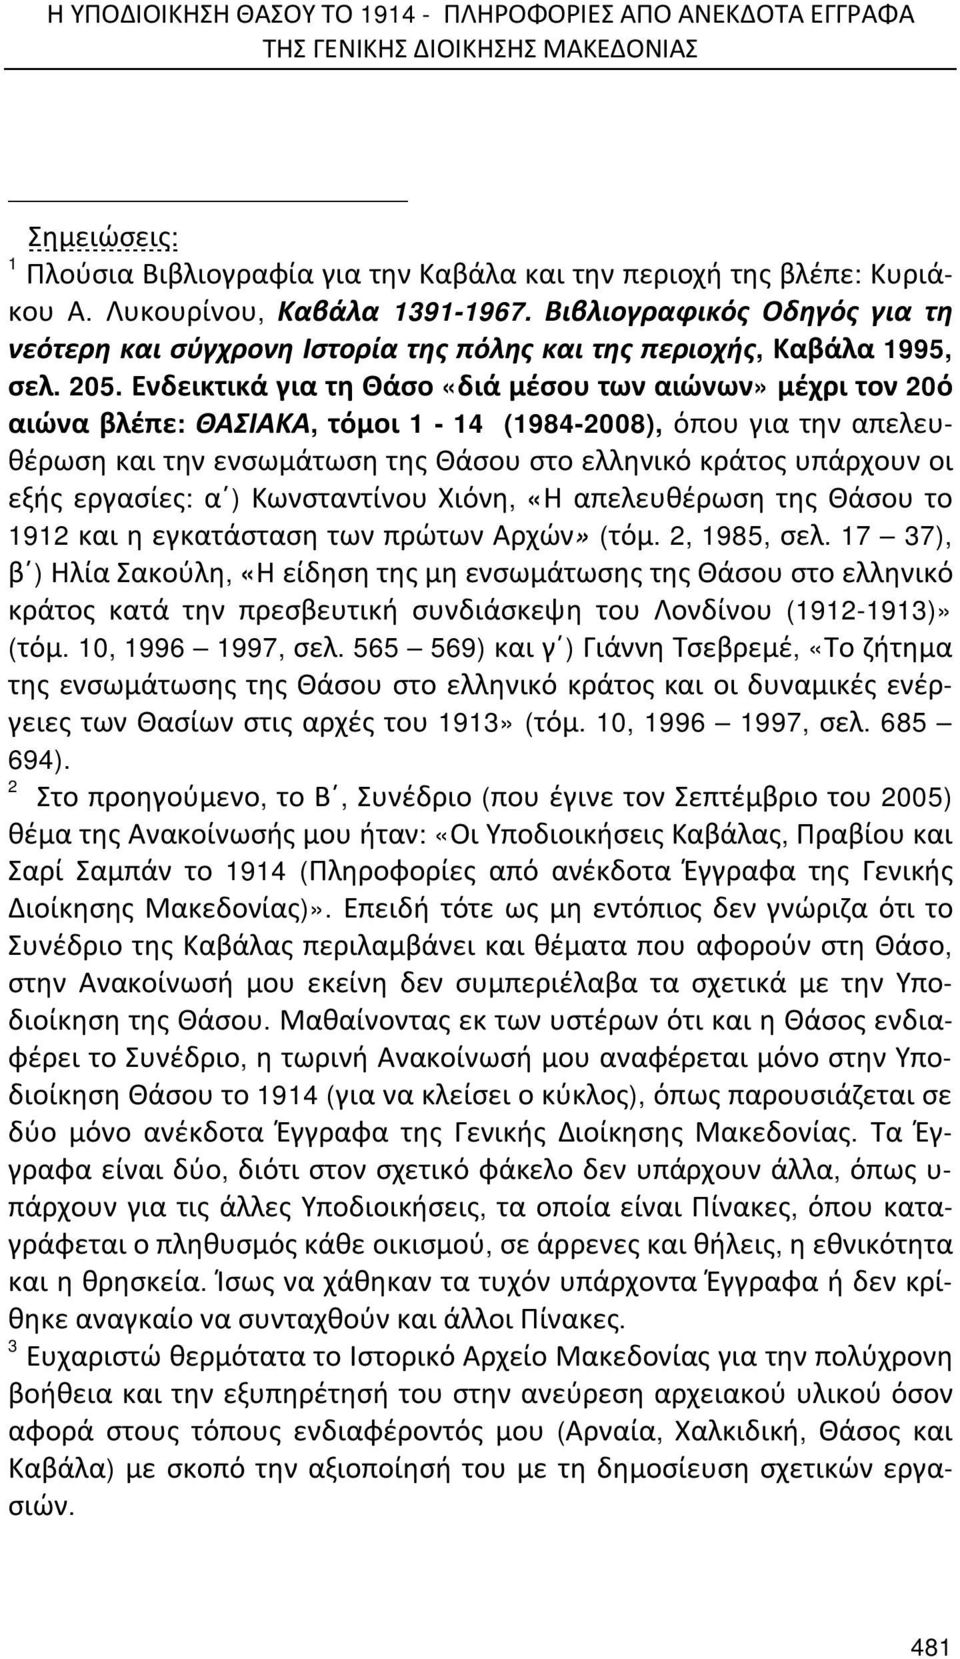 Ενδεικτικά για τη Θάσο «διά μέσου των αιώνων» μέχρι τον 20ό αιώνα βλέπε: ΘΑΣΙΑΚΑ, τόμοι 1-14 (1984-2008), όπου για την απελευθέρωση και την ενσωμάτωση της Θάσου στο ελληνικό κράτος υπάρχουν οι εξής